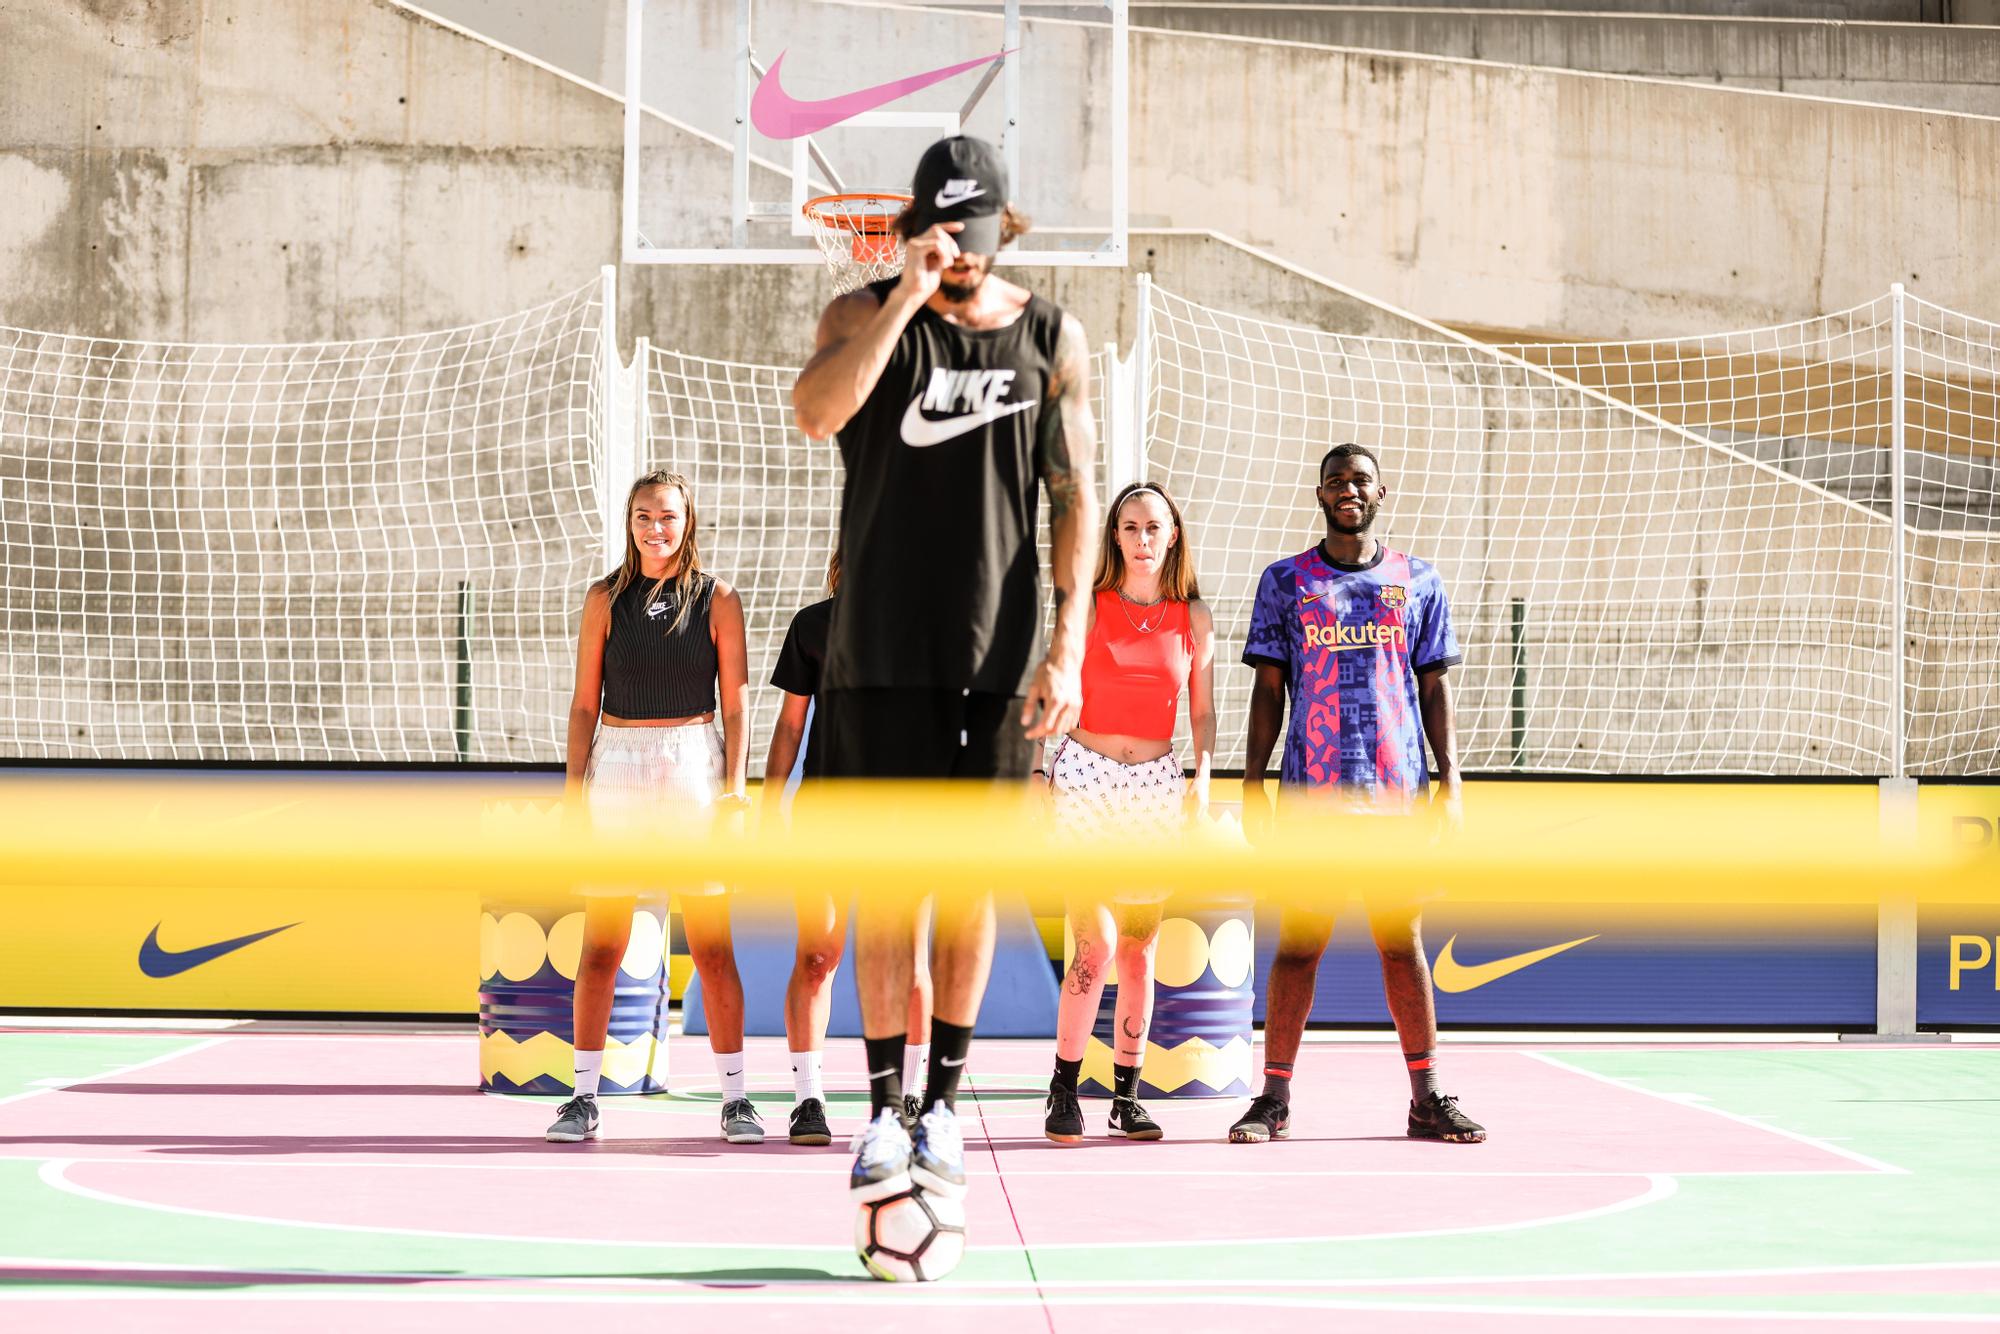 Nike reinventa el deporte urbano en Barcelona con 'Play Now BCN' - Sport